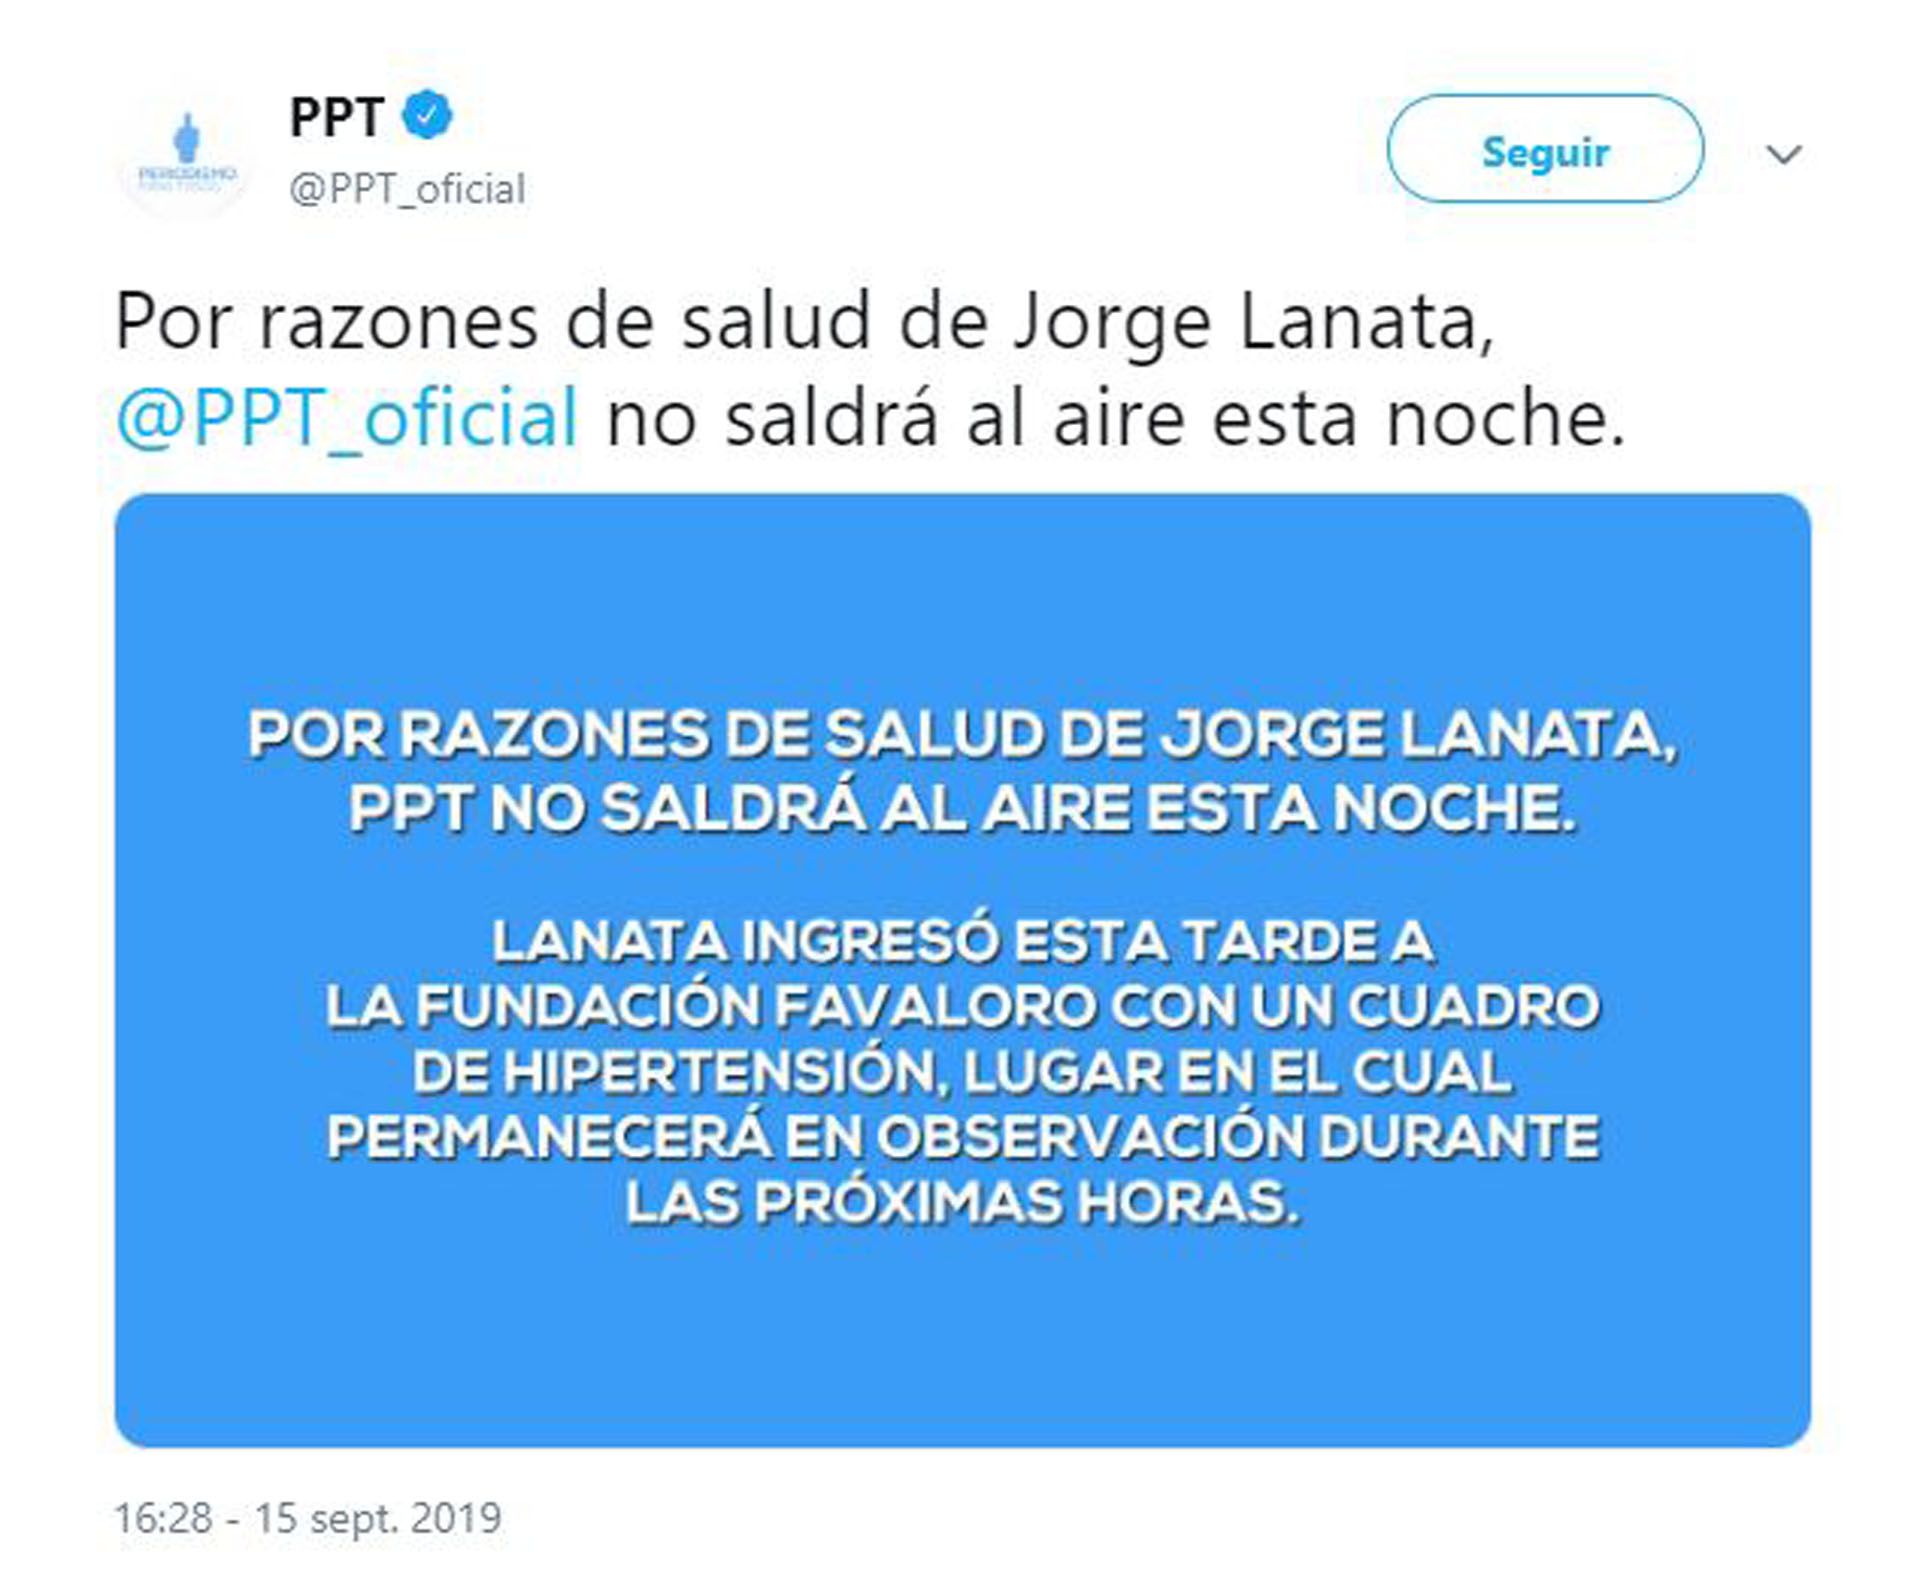 El mensaje de “PPT” sobre la salud de Jorge Lanata (Foto: Twitter)